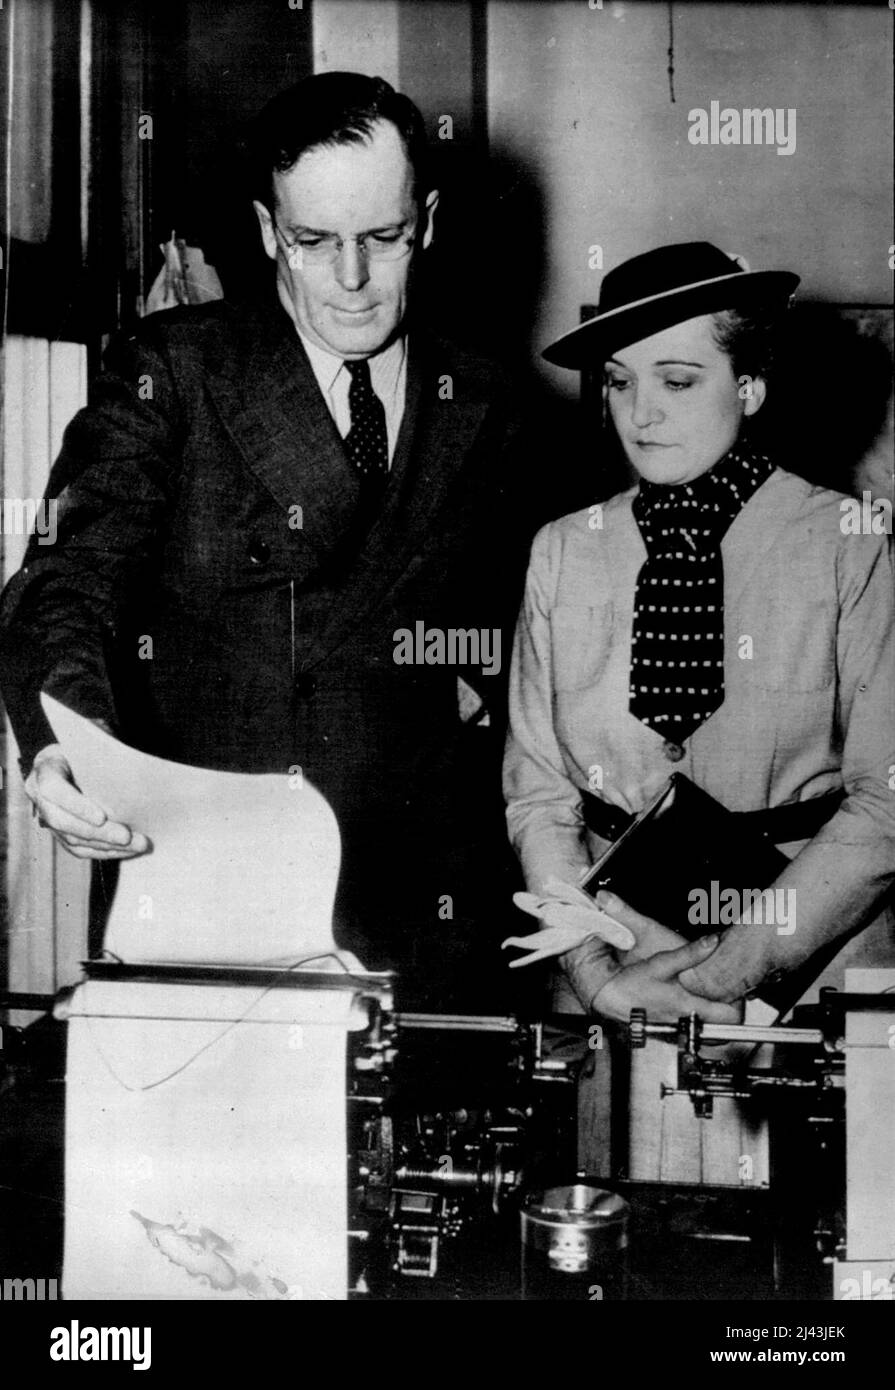 George Putnam - Ehemann von Amelia Earnhart - Persönlichkeit. 07. Juli 1937. (Foto von The Associated Press of Great Britain Ltd.). Stockfoto